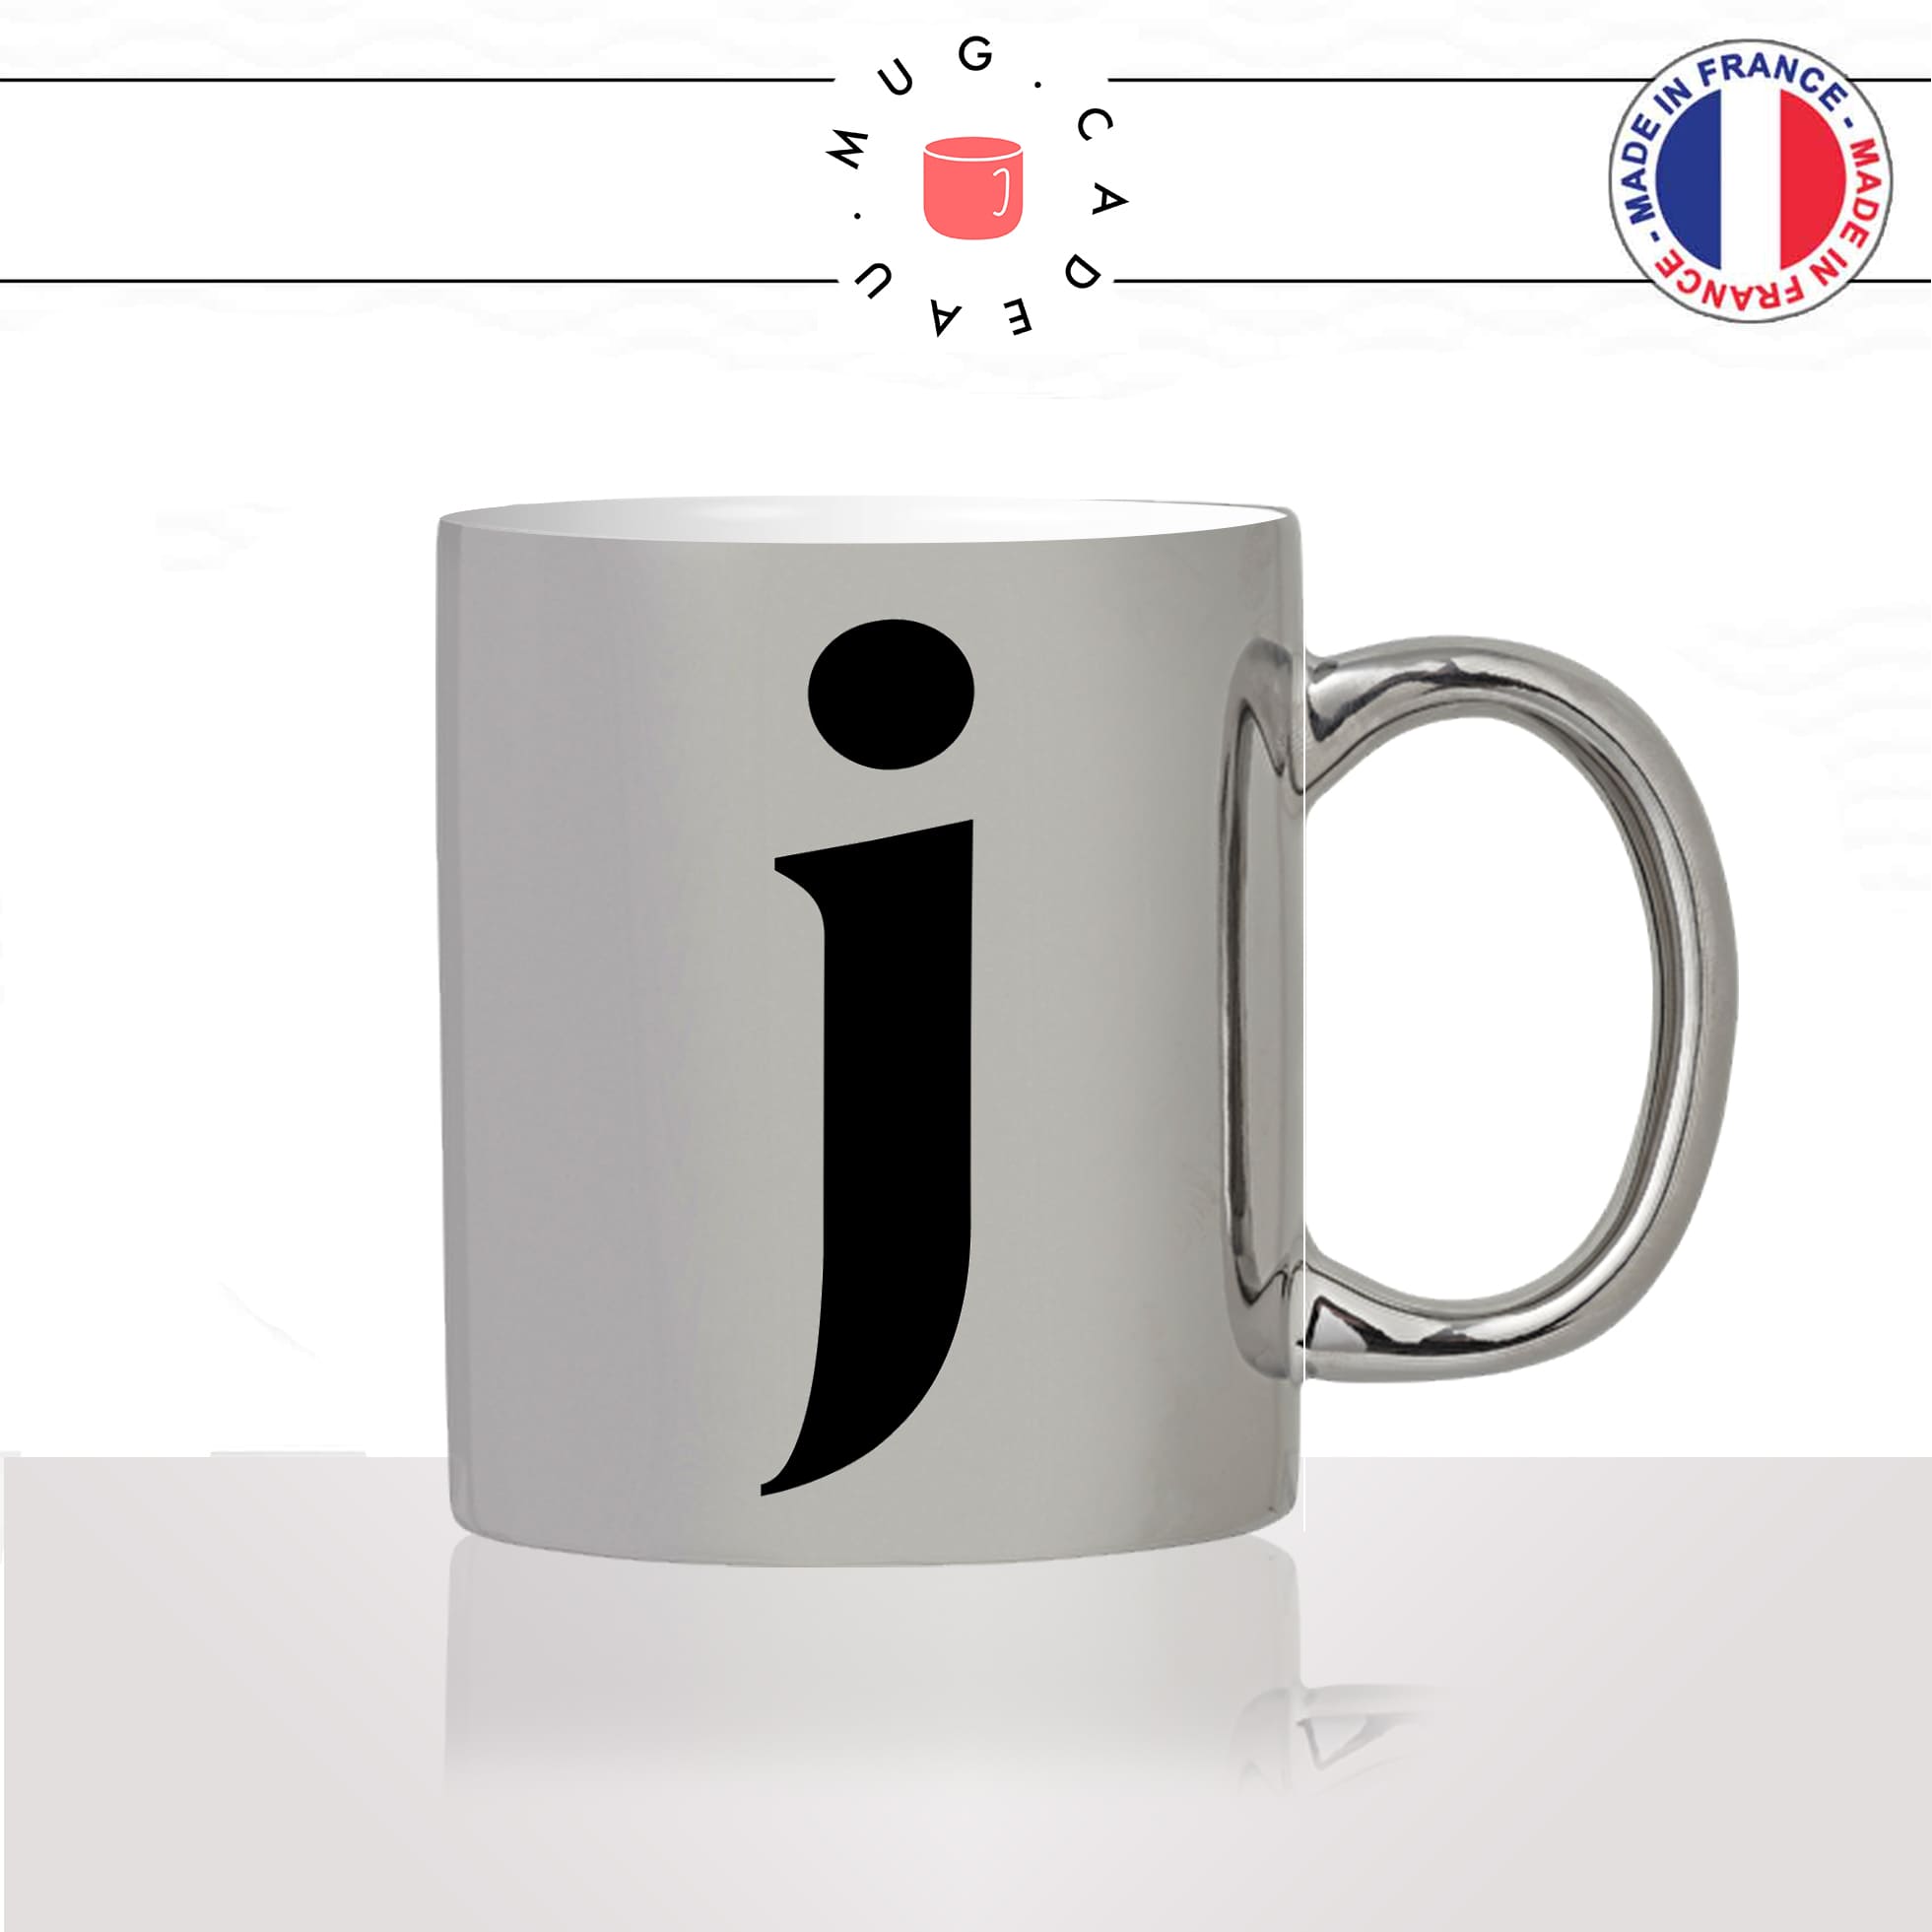 mug-tasse-argent-argenté-silver-initiale-J-jean-jeanne-jacques-jacky-majuscule-lettre-collegue-original-idée-cadeau-fun-cool-café-thé2